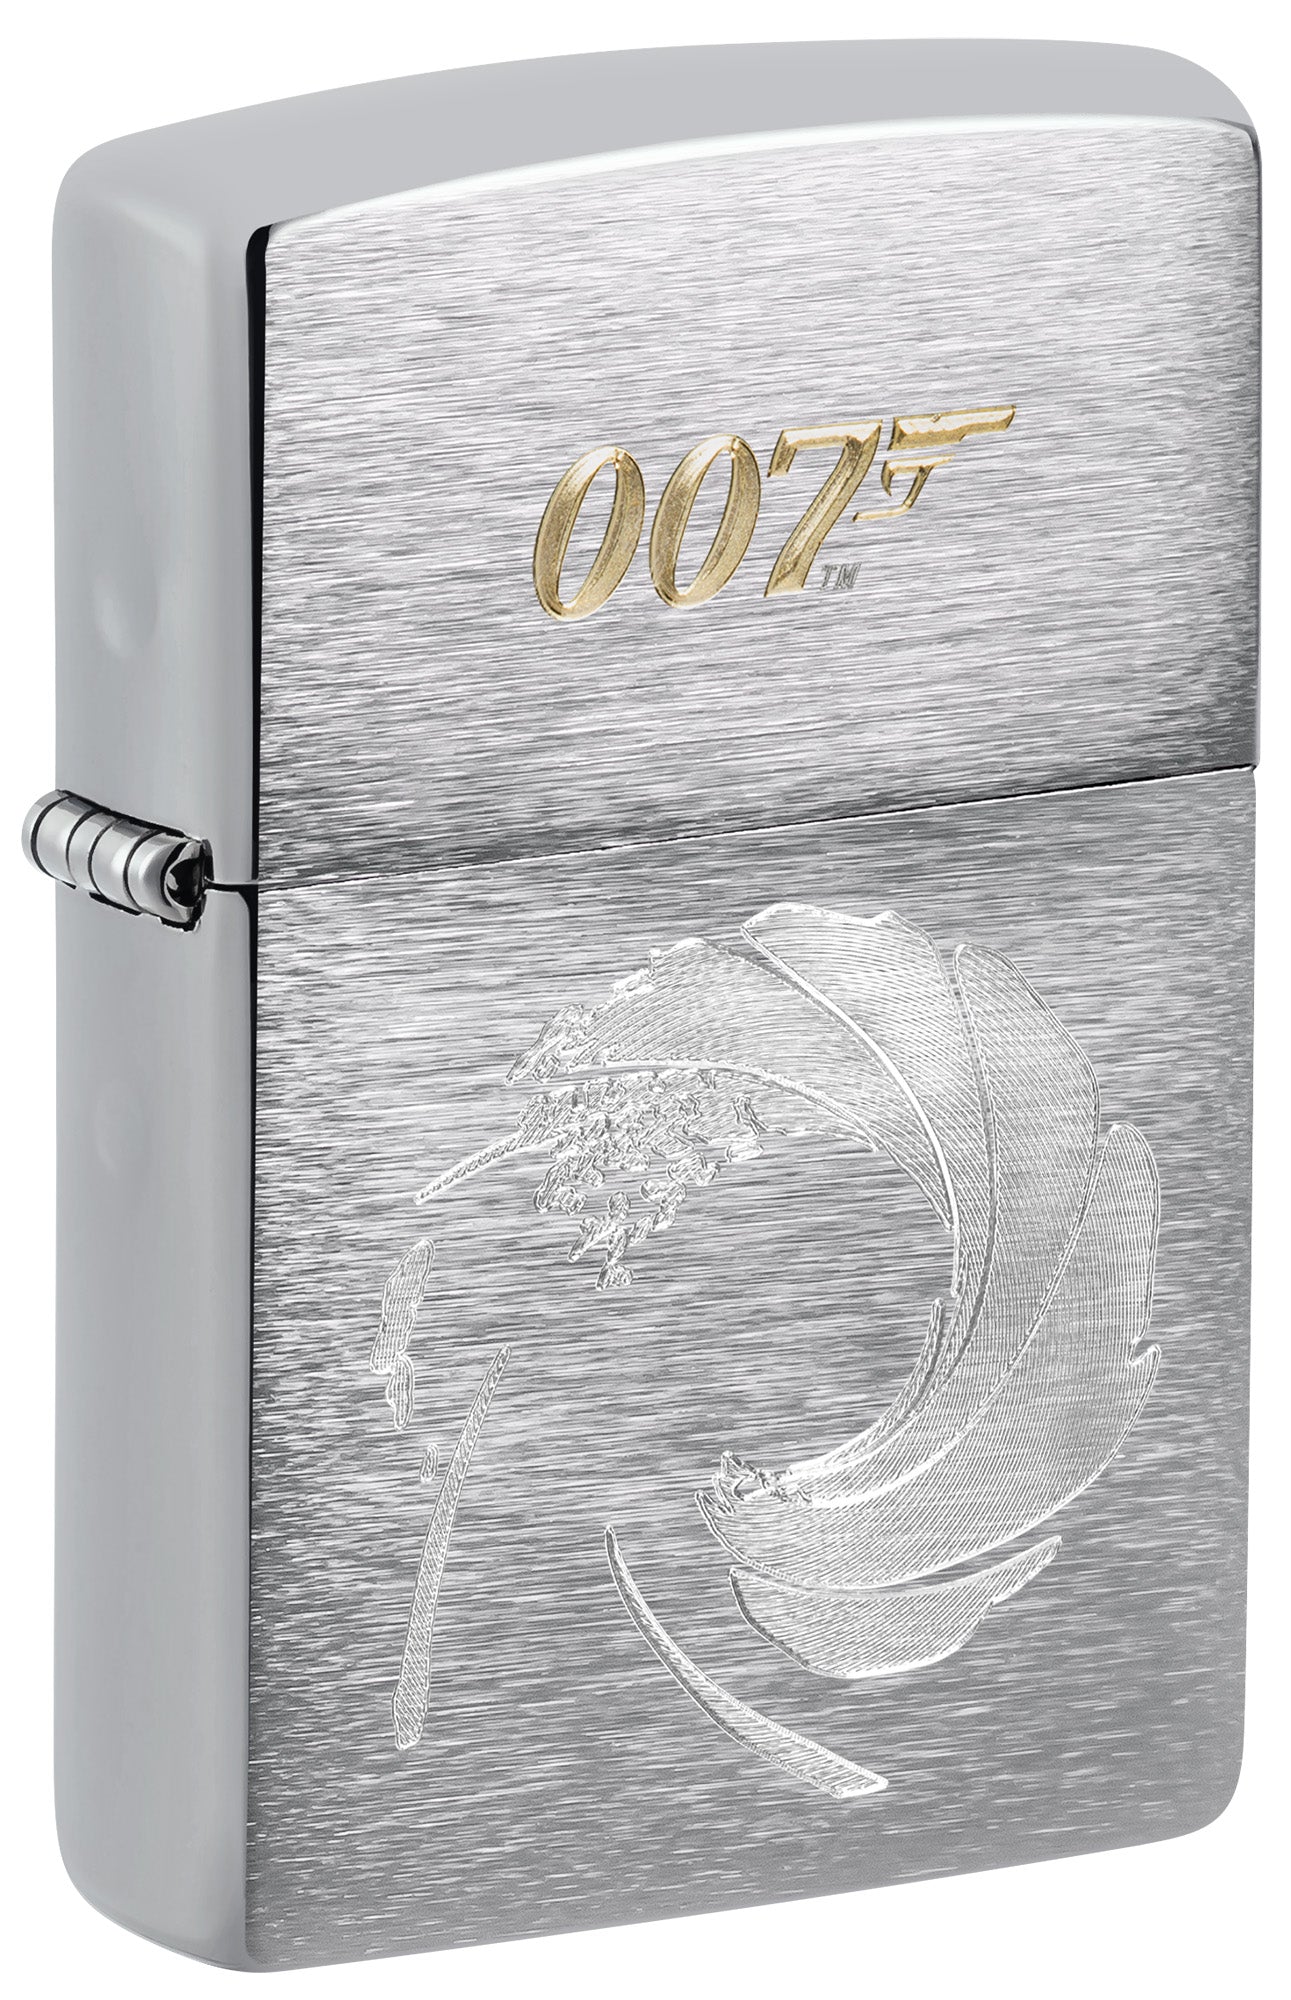 Zippo Lighter: James Bond 007 Logo, Engraved - Brushed Chrome 81517